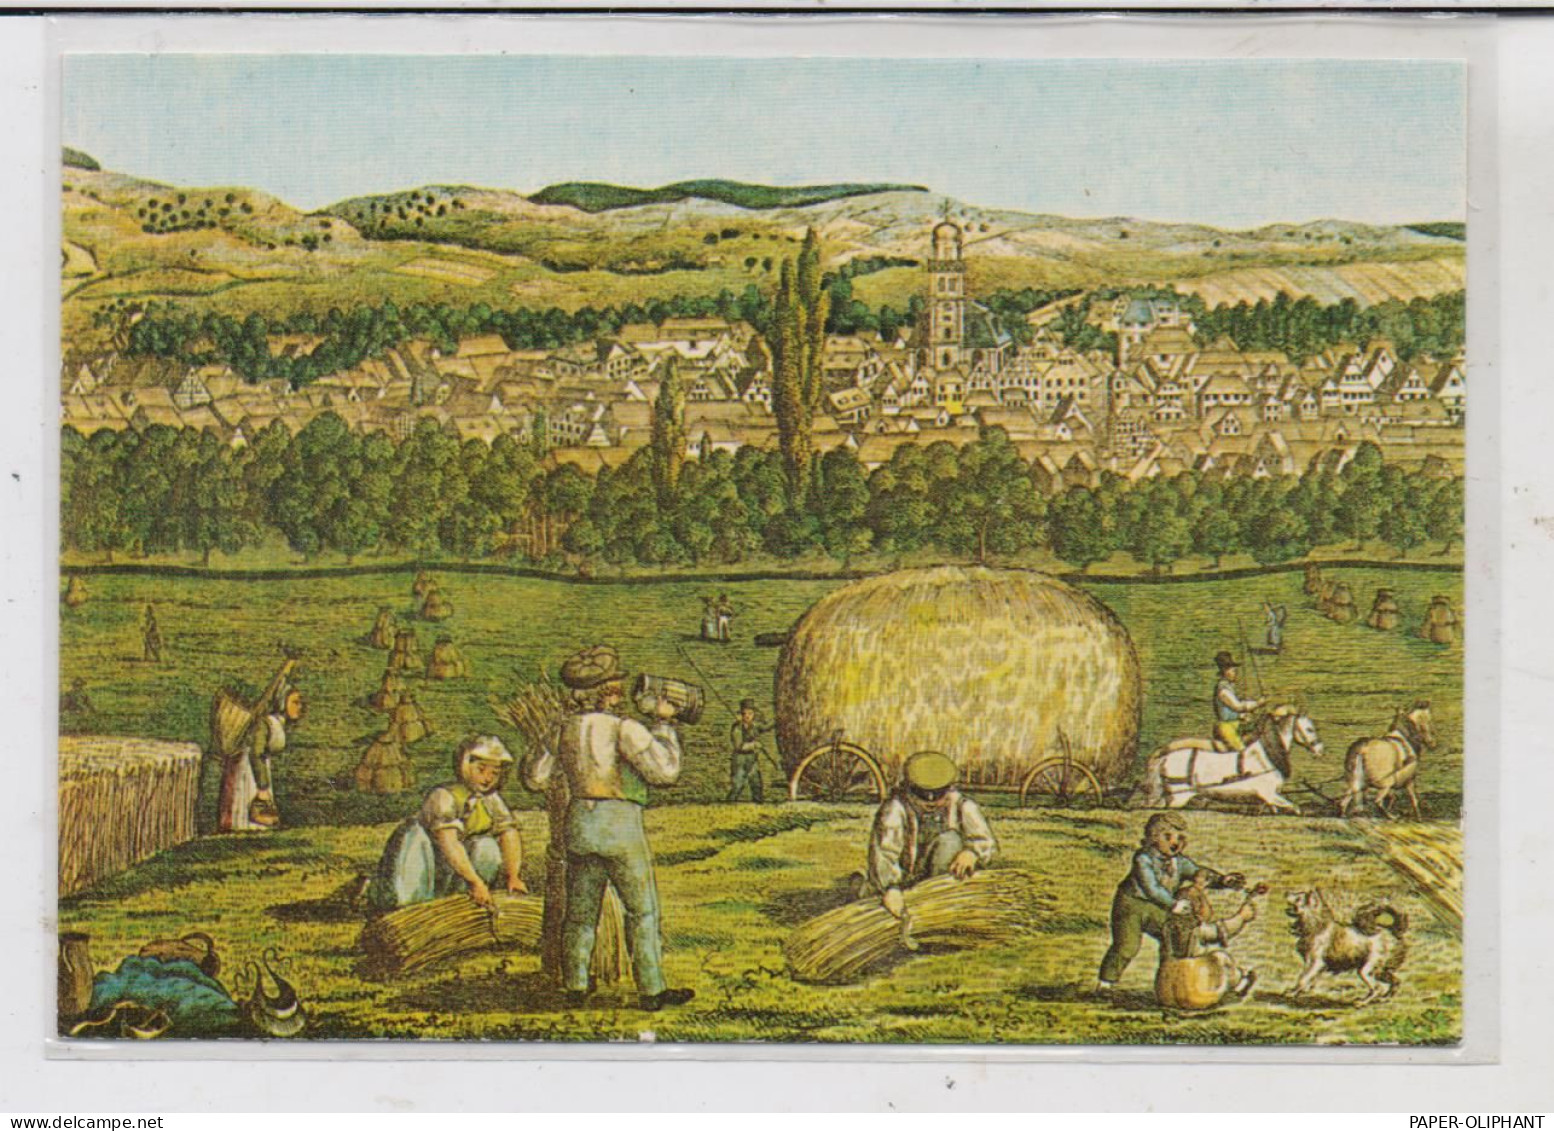 6420 LAUTERBACH, Historische Ansicht Von 1825 Nach Ch.A. Rauschenbach - Lauterbach